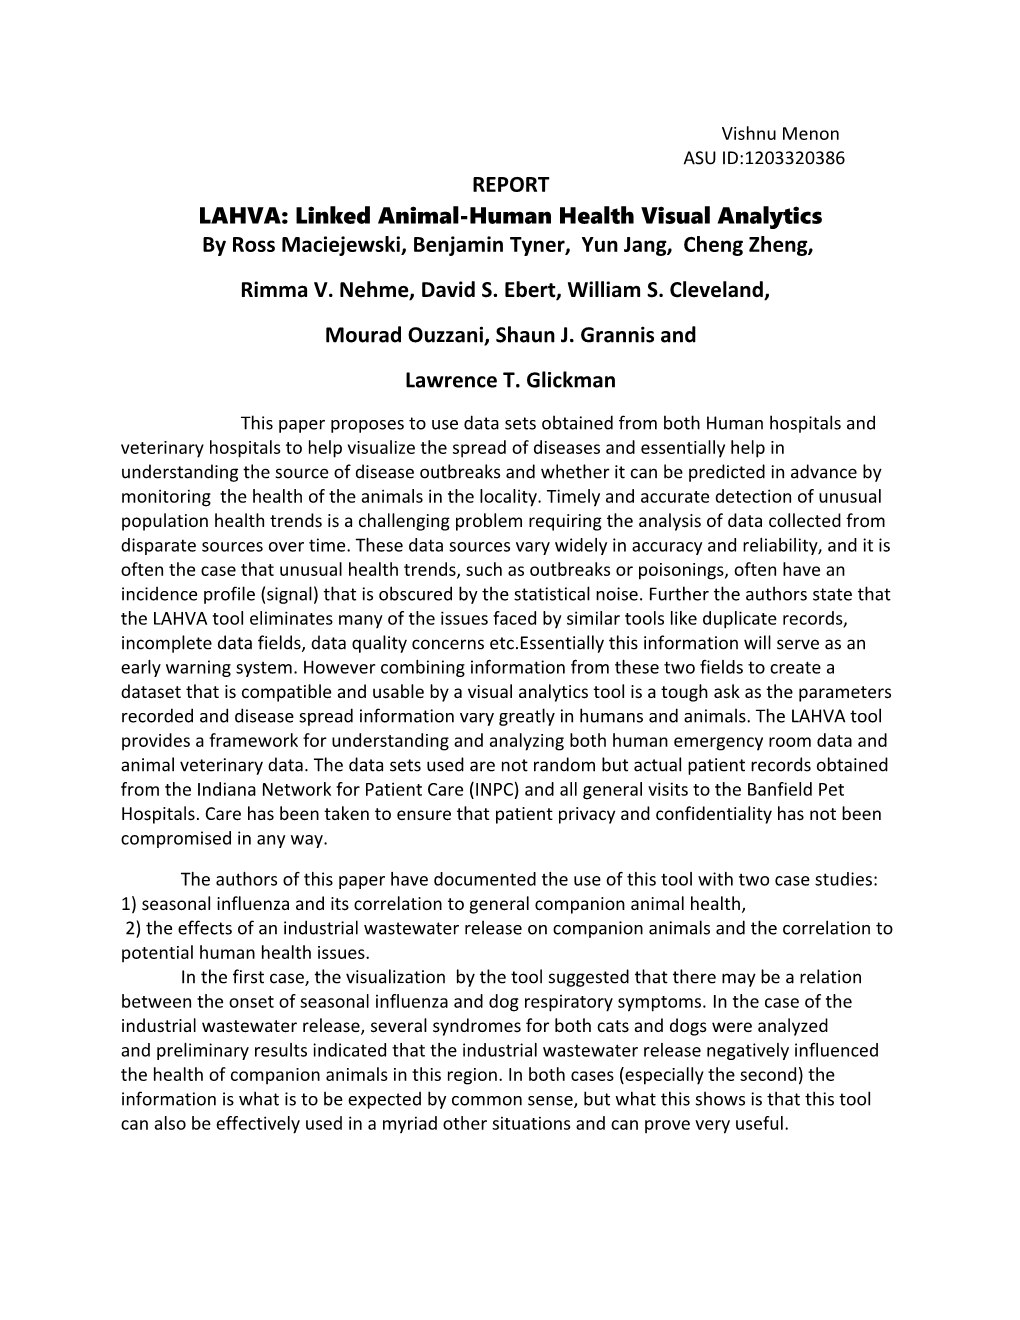 LAHVA: Linked Animal-Human Health Visual Analytics